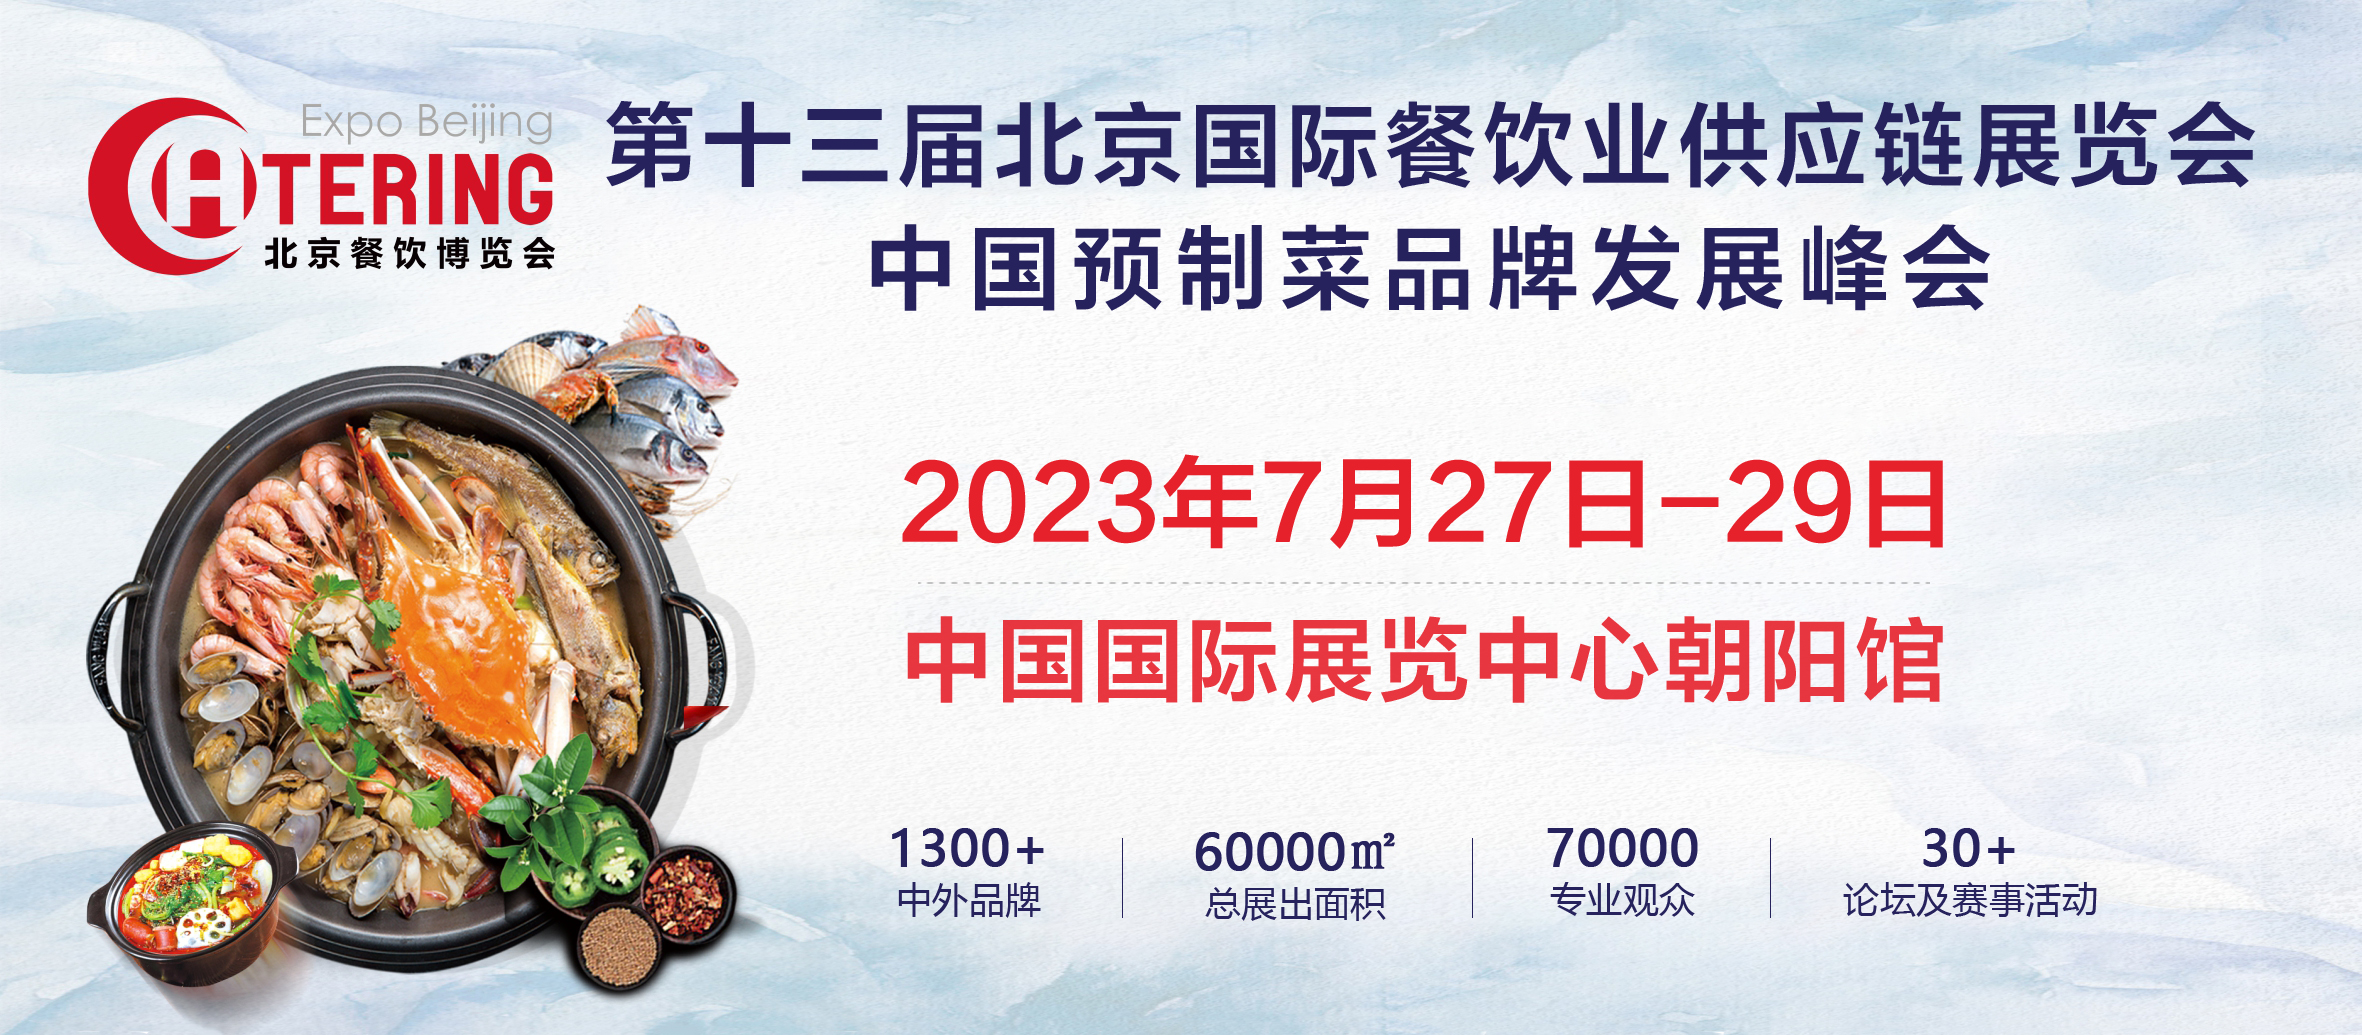 展商推介 | 吉得利食品将携最新产品亮相2023北京餐博会(图1)